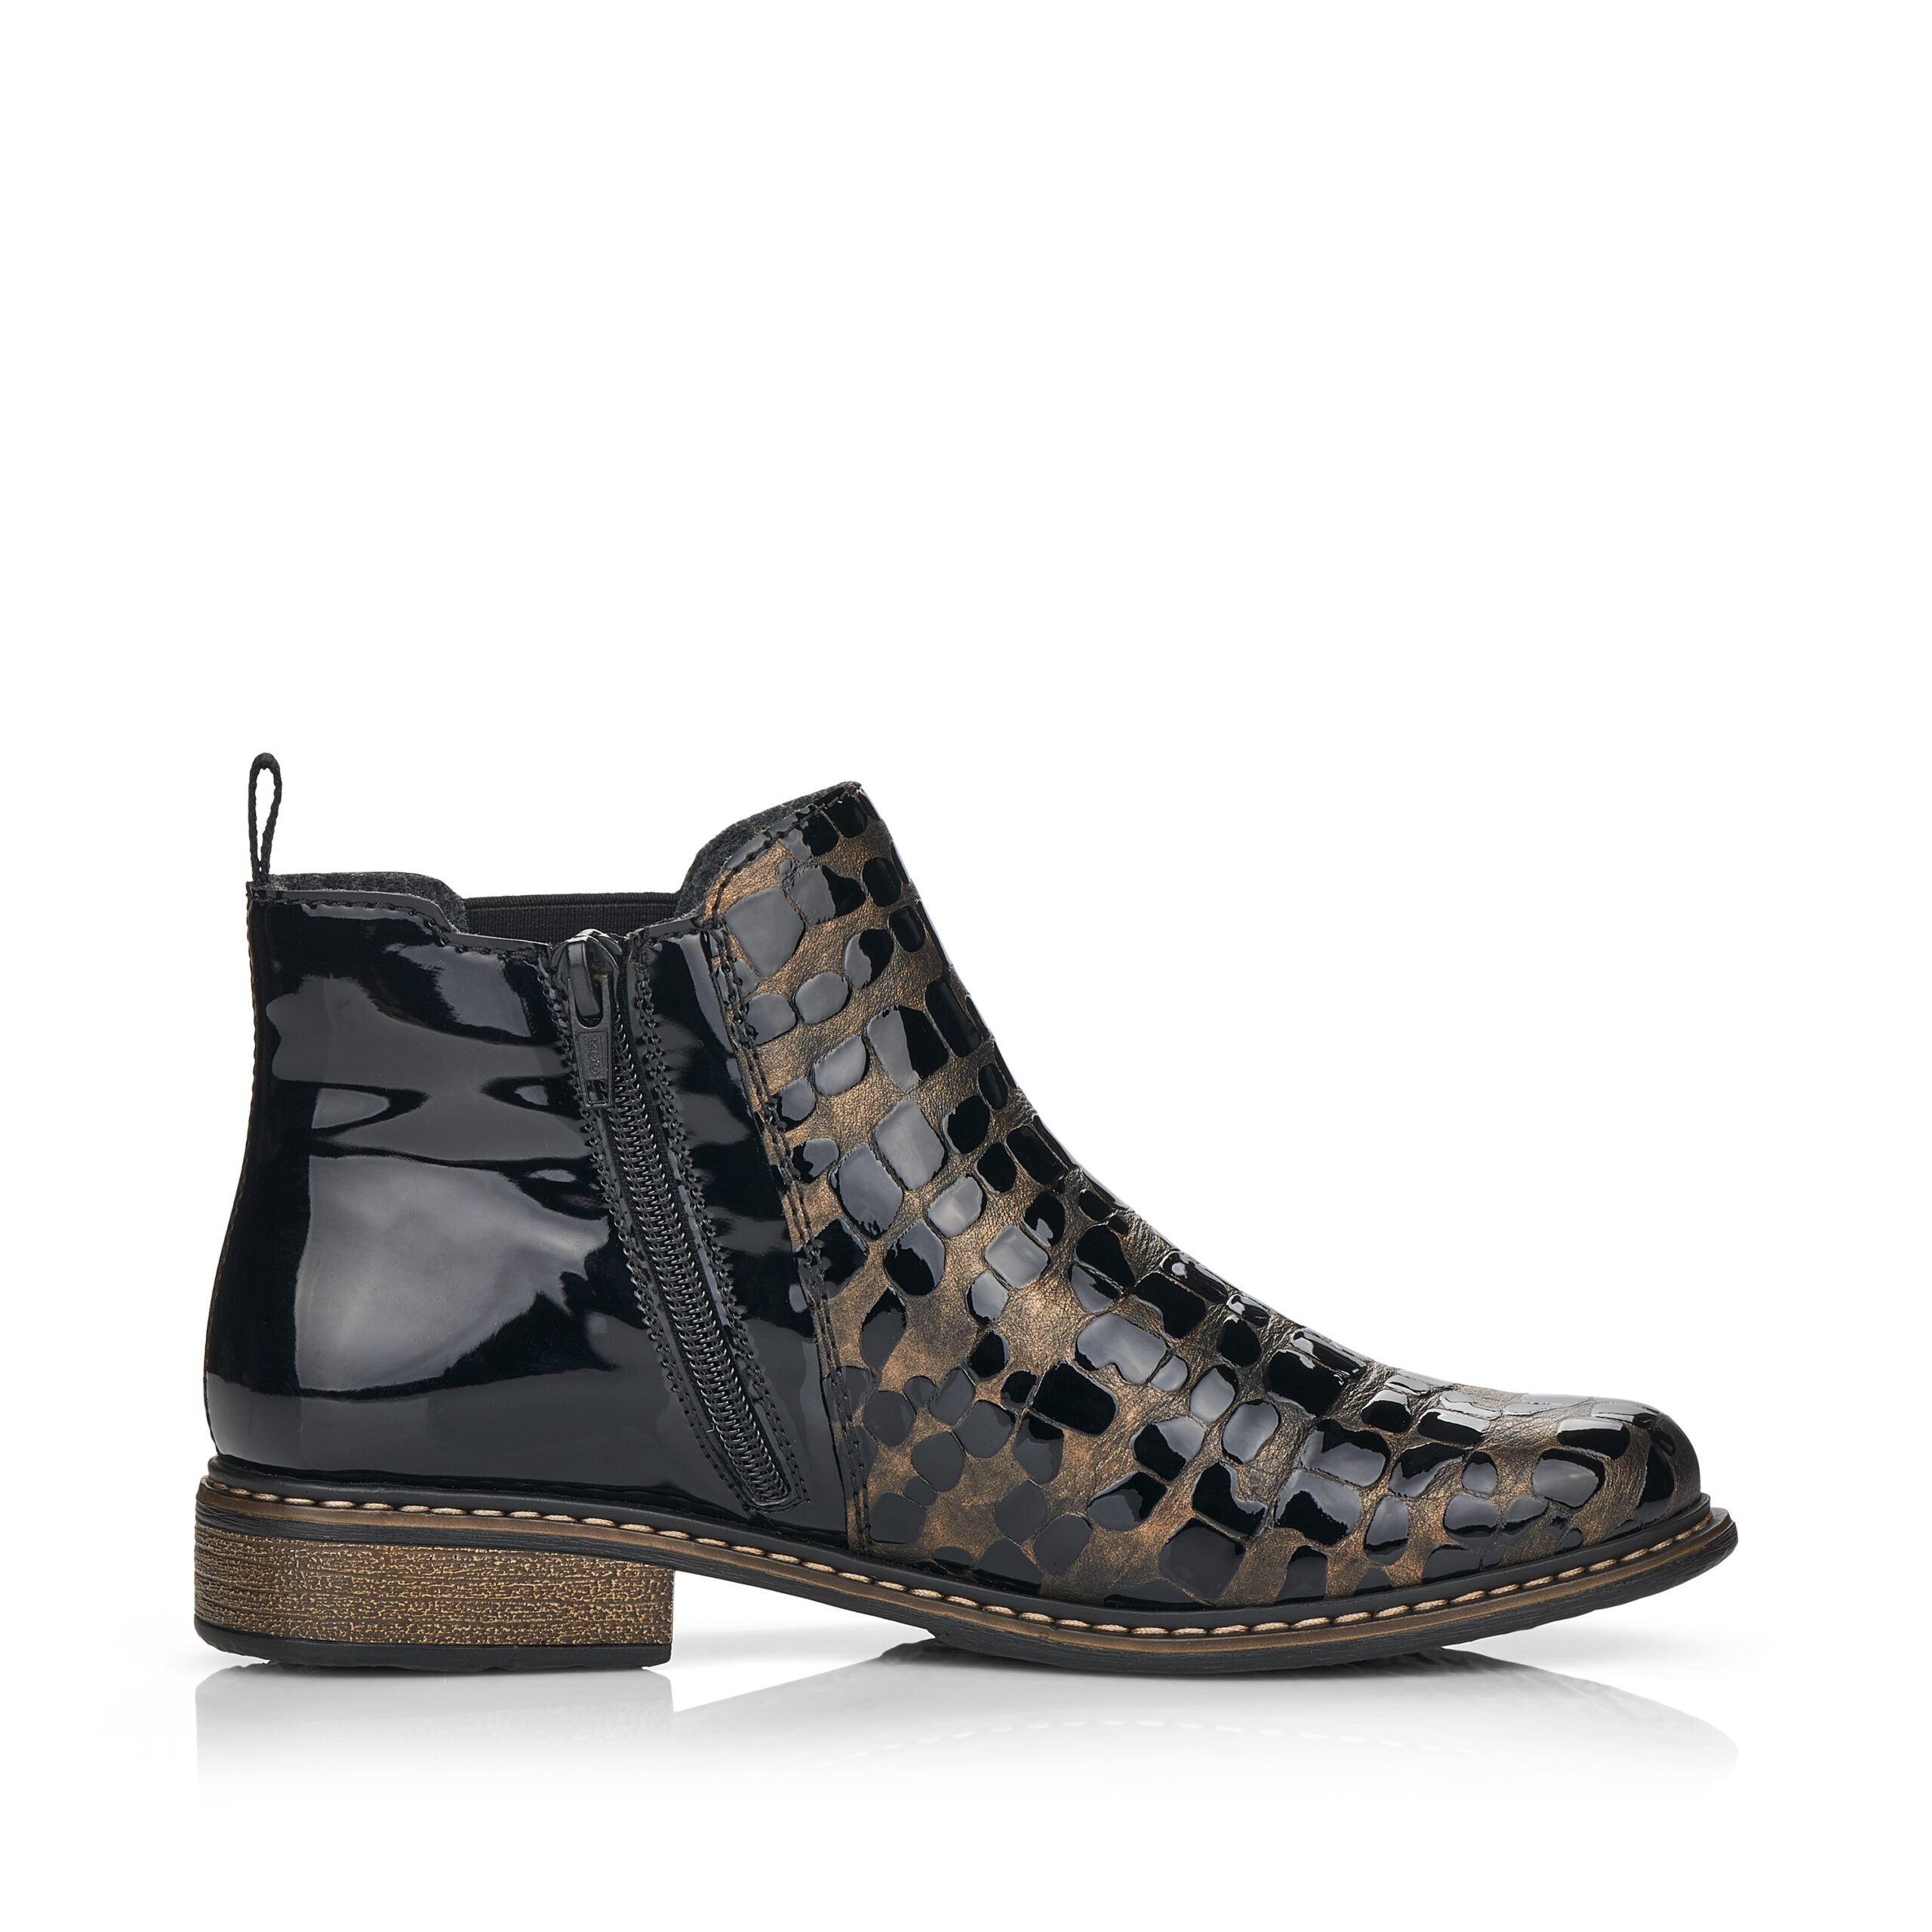 Bottines noires pour femme marque Rieker. Référence Z4965-90 Schwarz. Disponible chez Chauss'Family magasin de chaussures Issoire.